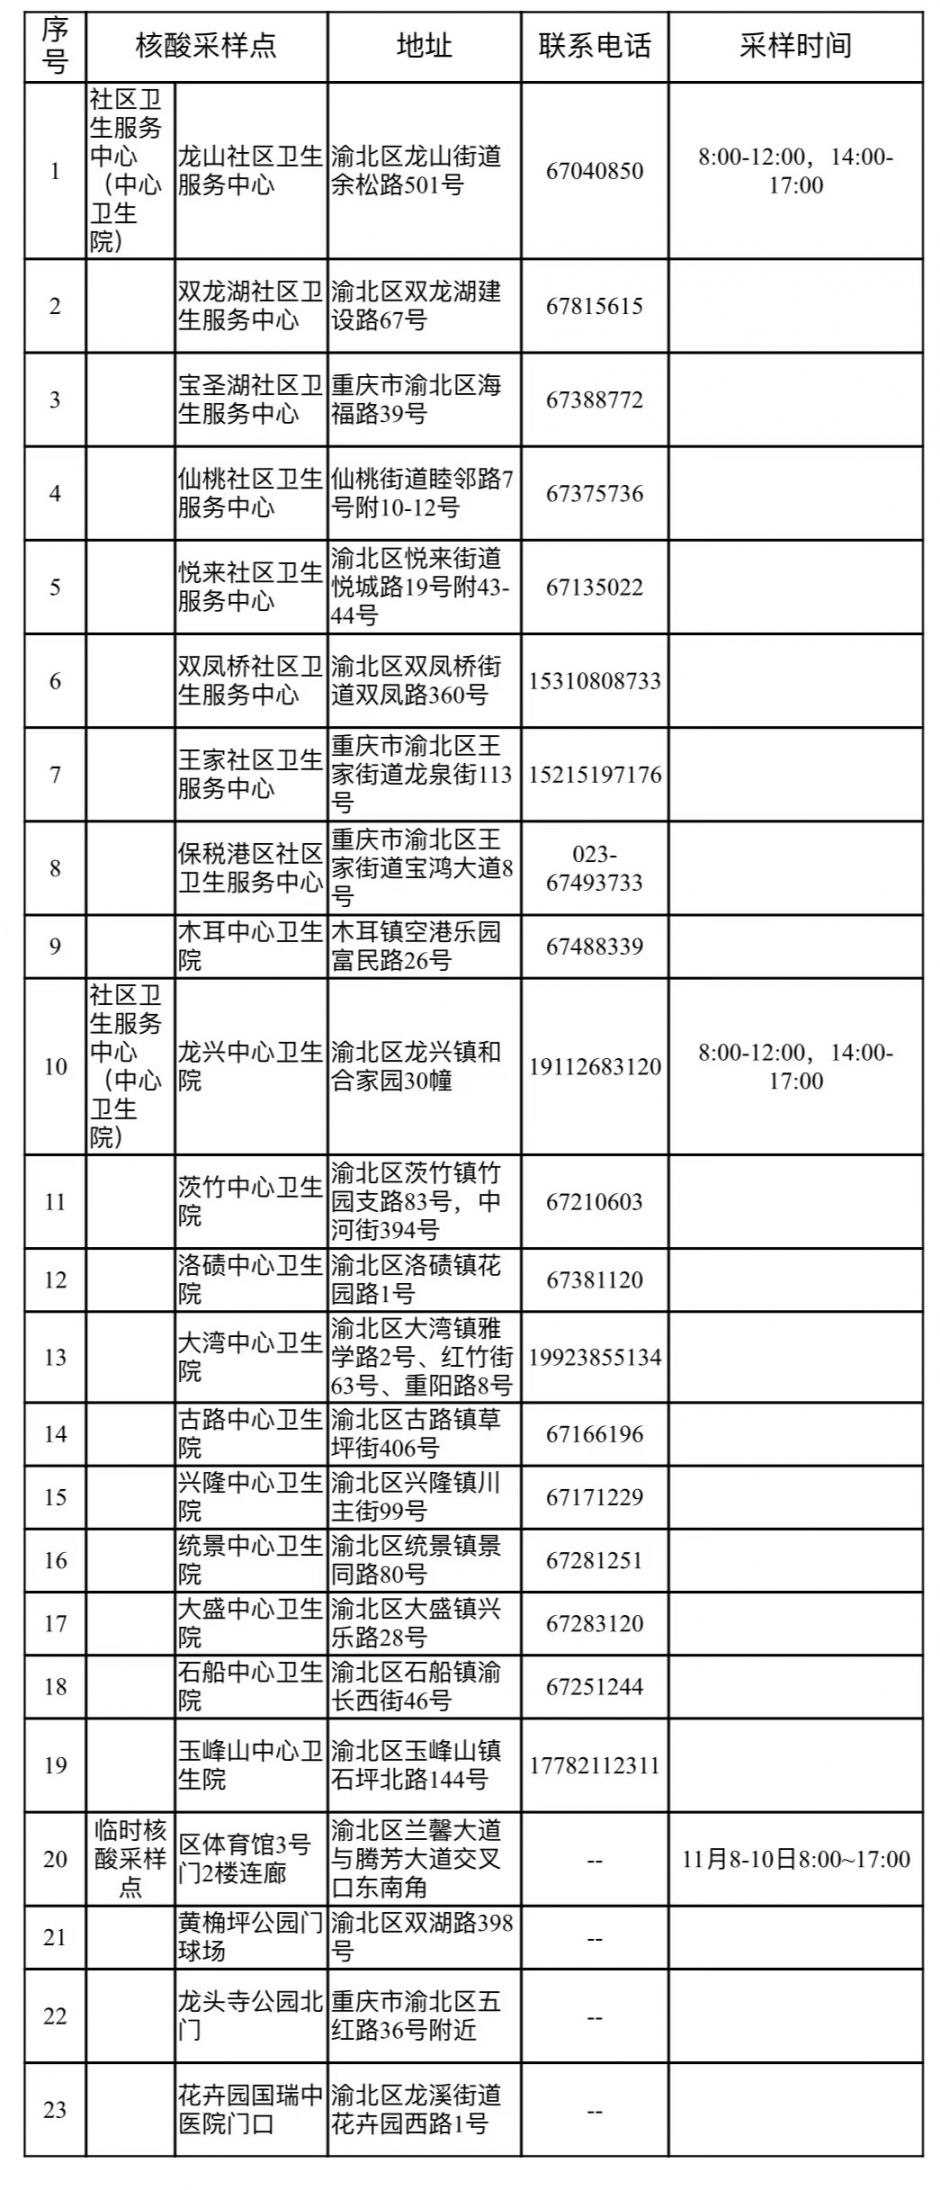 重庆渝北区渝康码黄码人员核酸检测地点